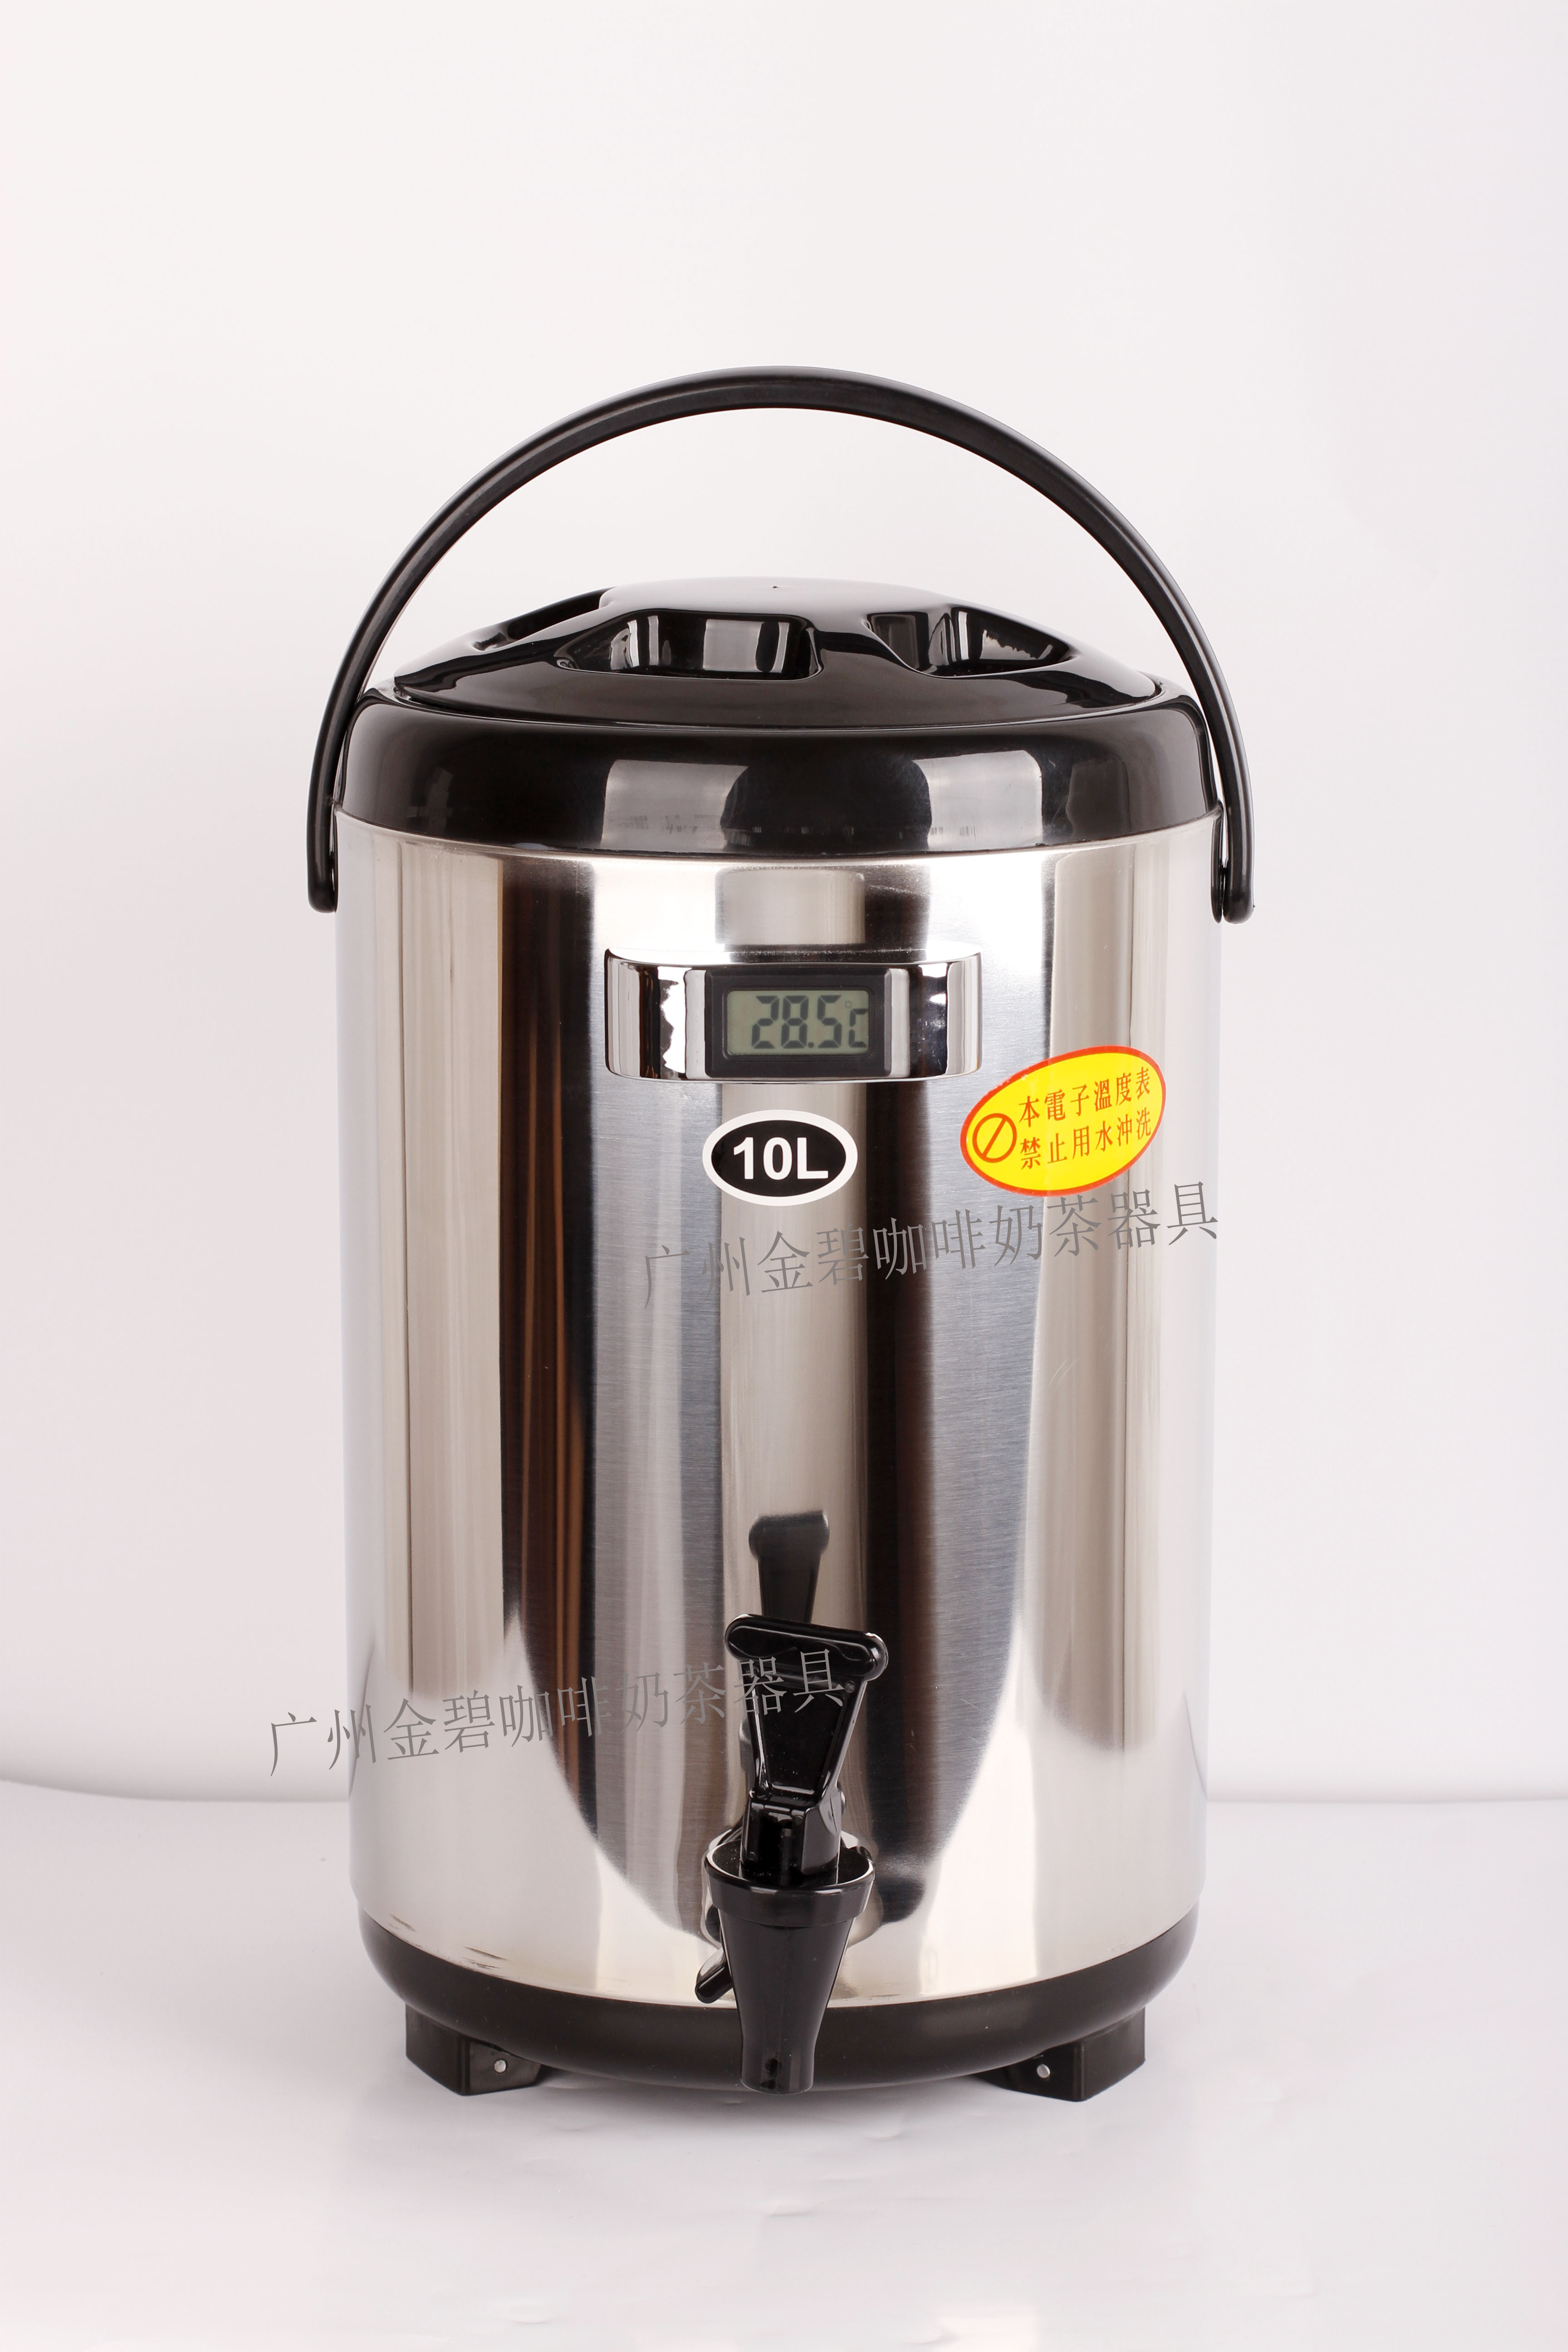 新款温度计保温茶桶 内部凹槽 不锈钢奶茶保温桶